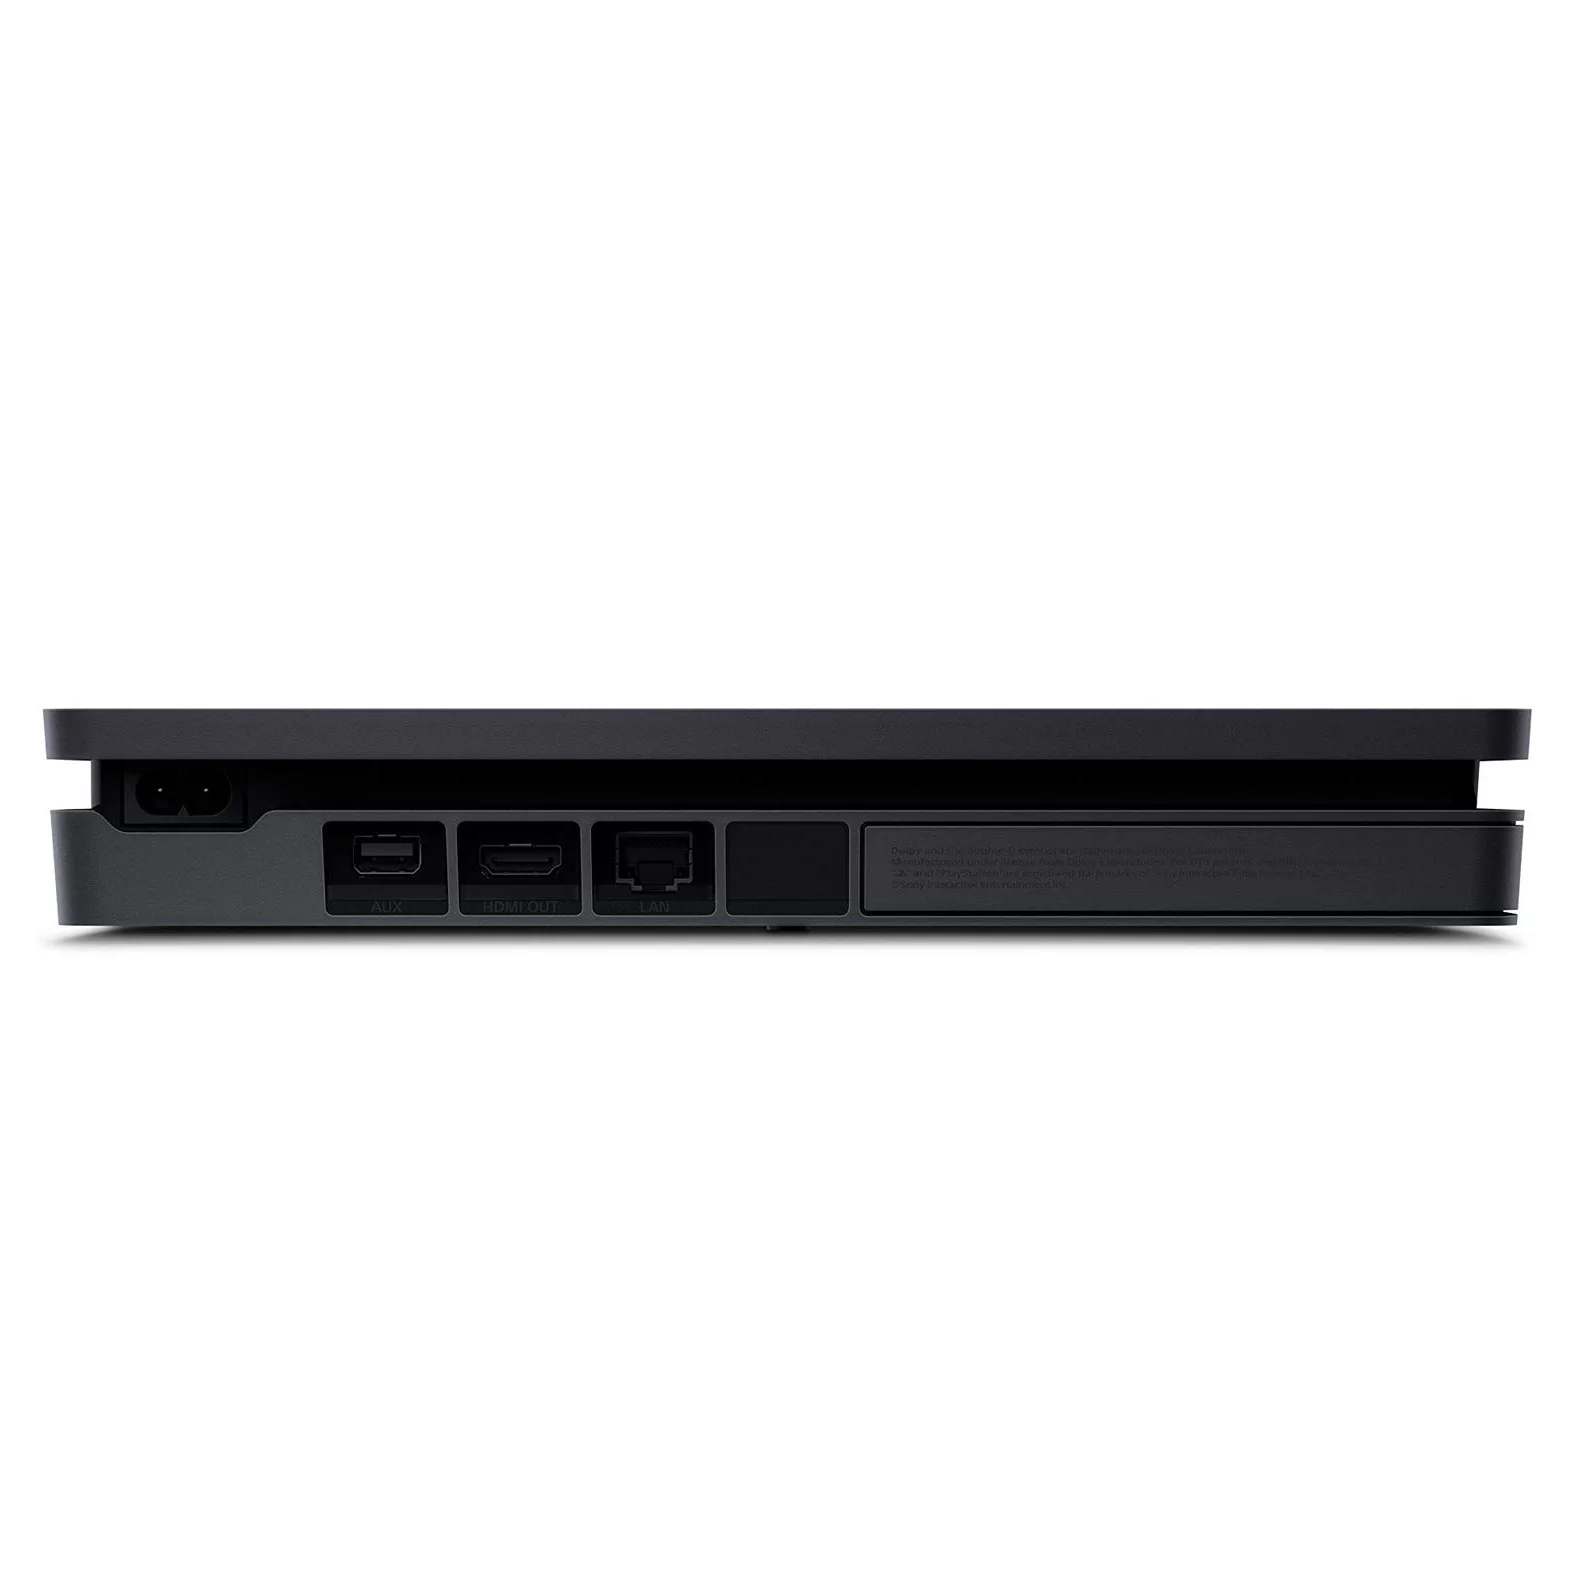 PlayStation 4 1TB Consola Sony CUH-2215B + Call Of Duty MWII - La Victoria  - Ecuador